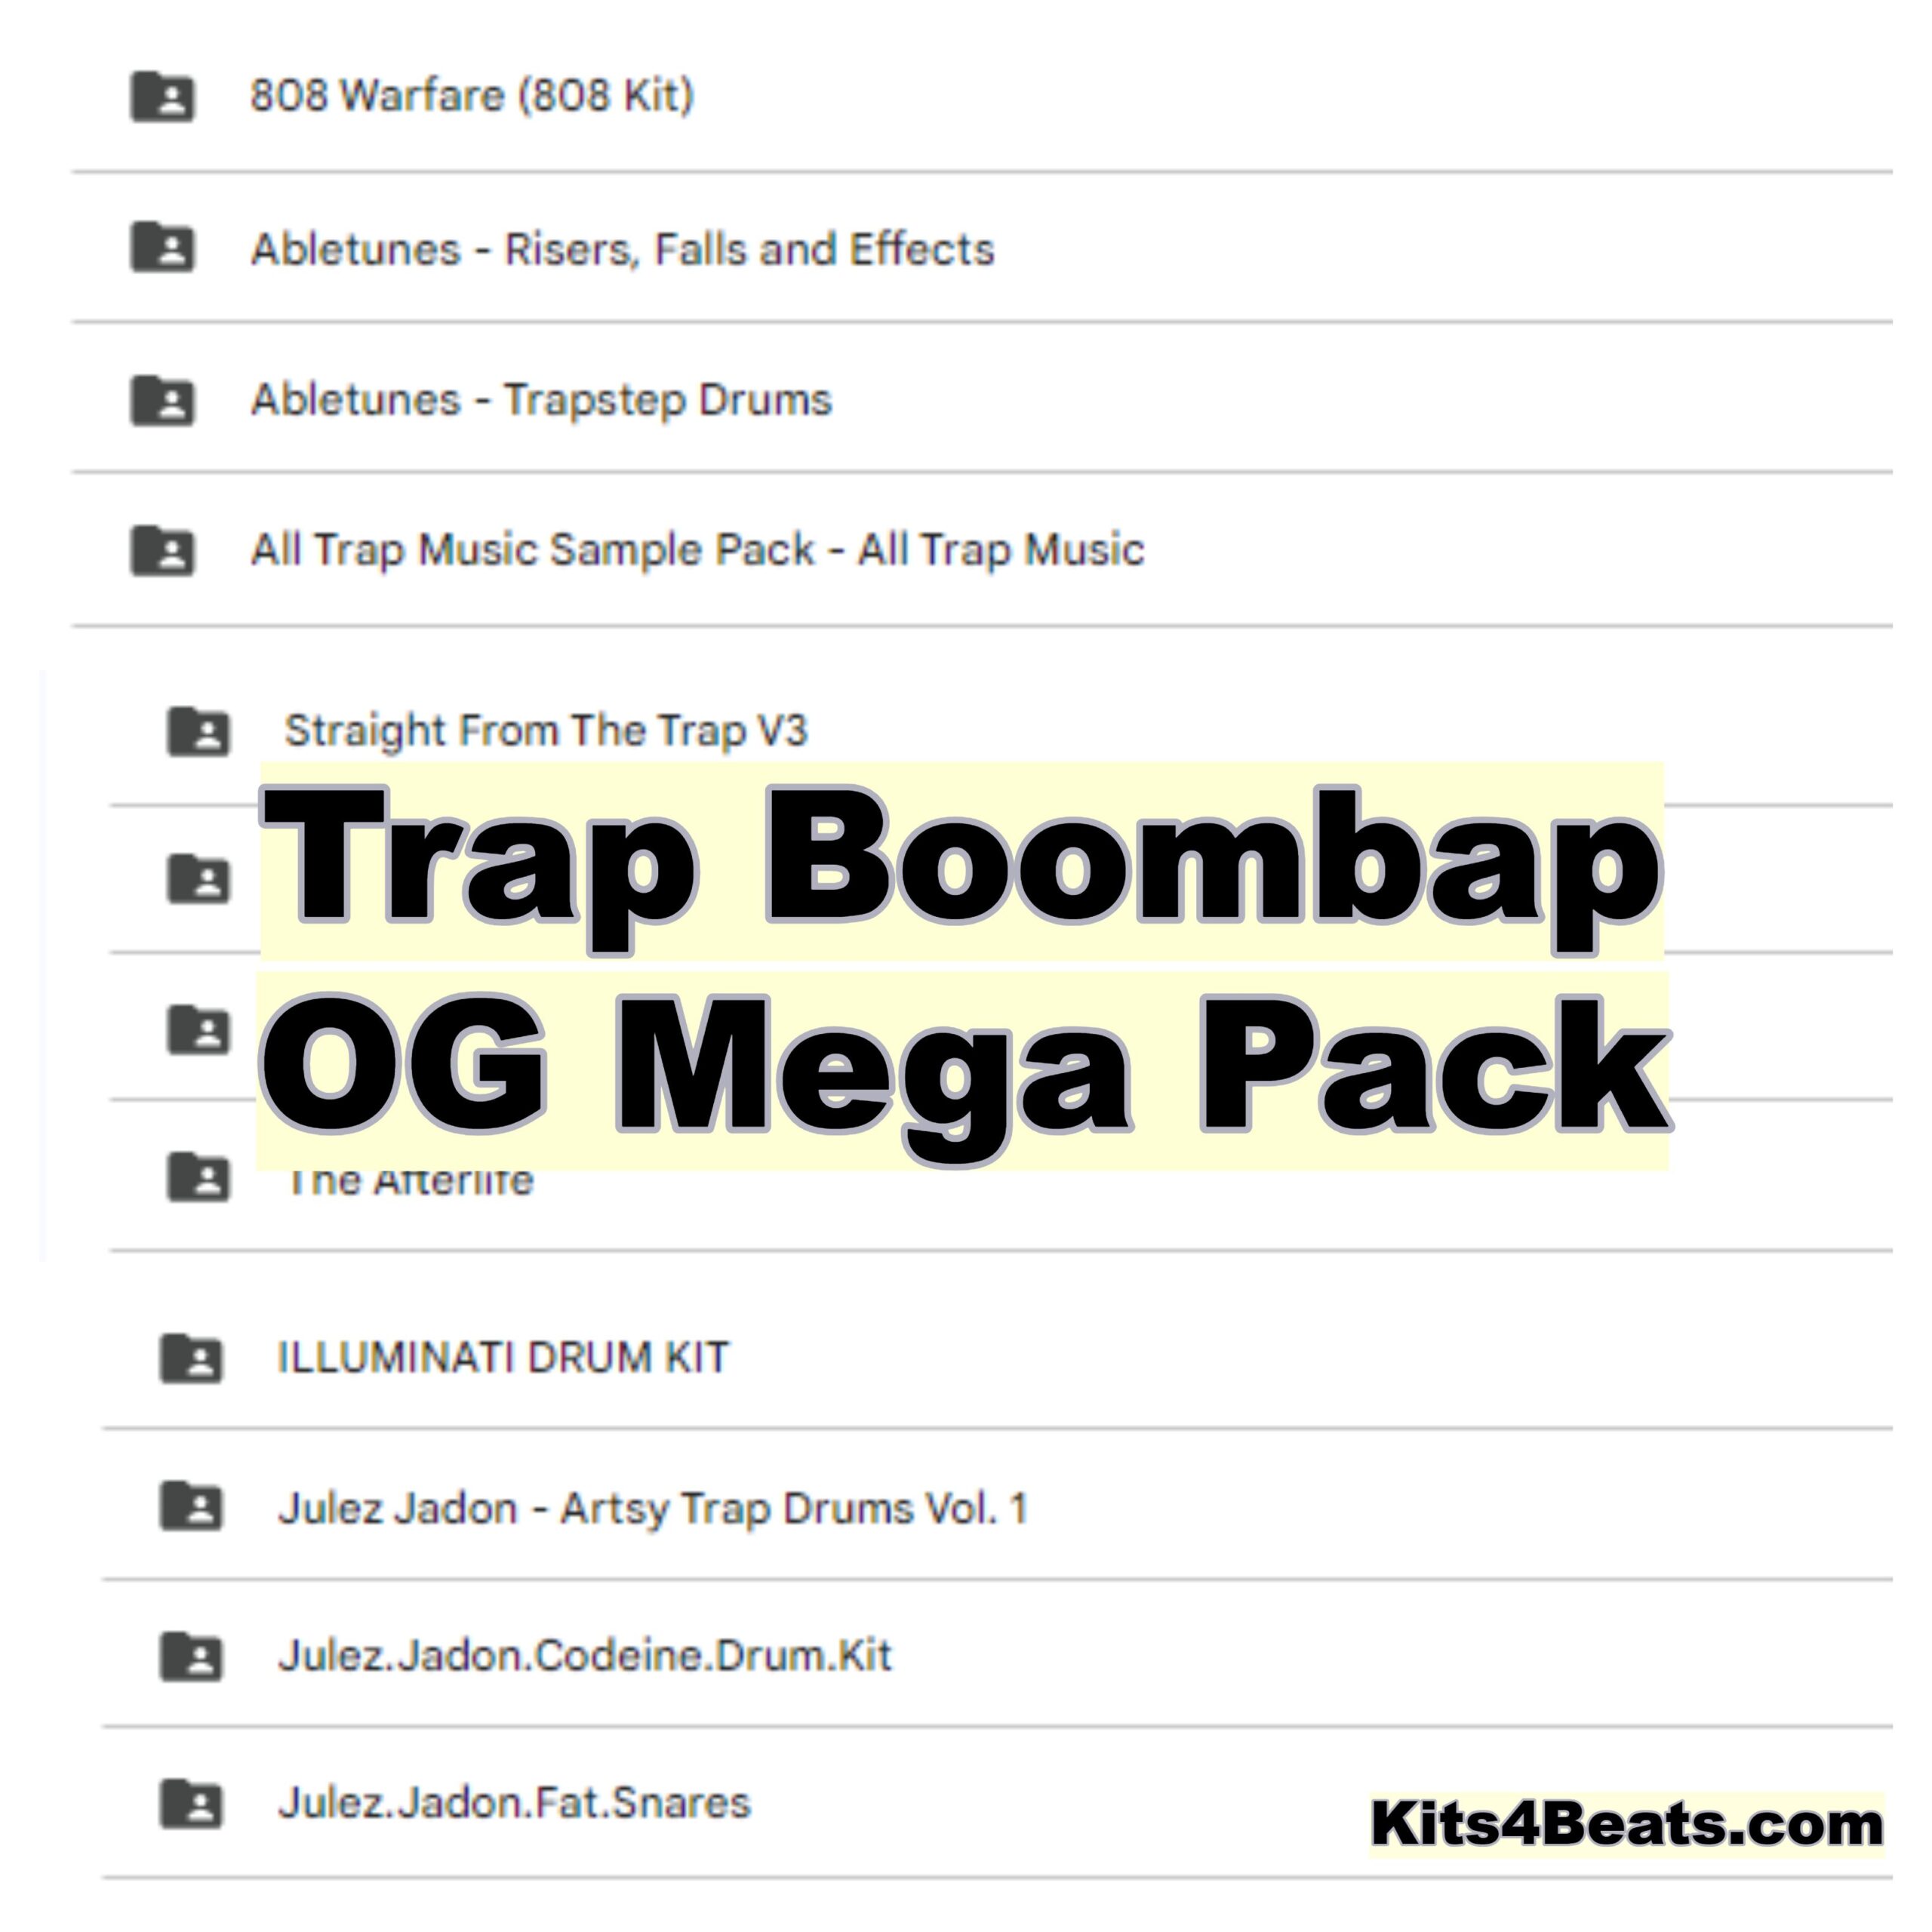 Trap Boombap OG Mega Pack